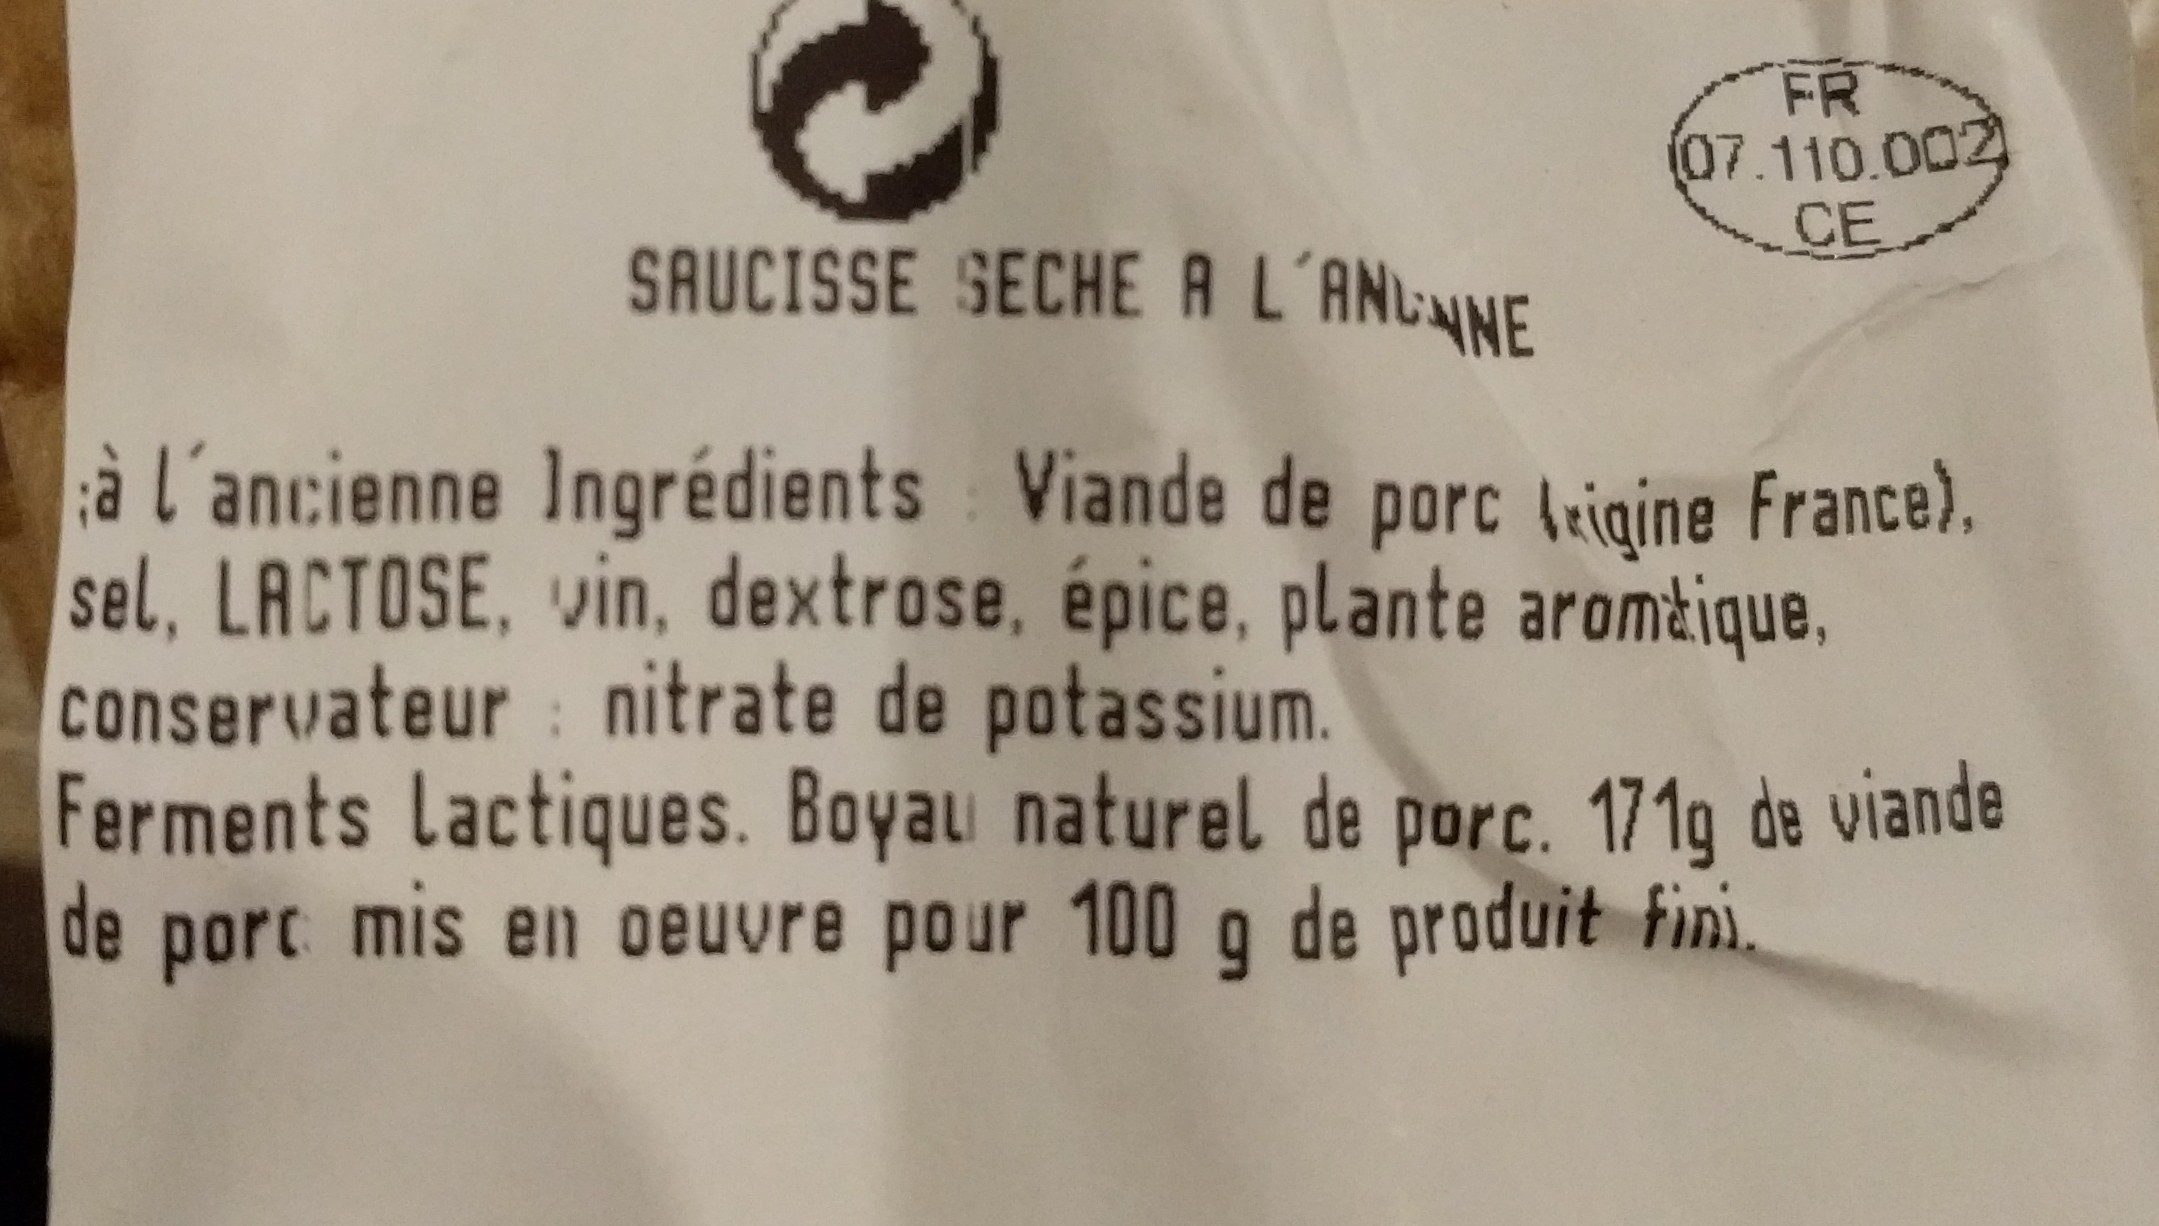 Saucisse sèche à l'ancienne artisanale - Ingredients - fr